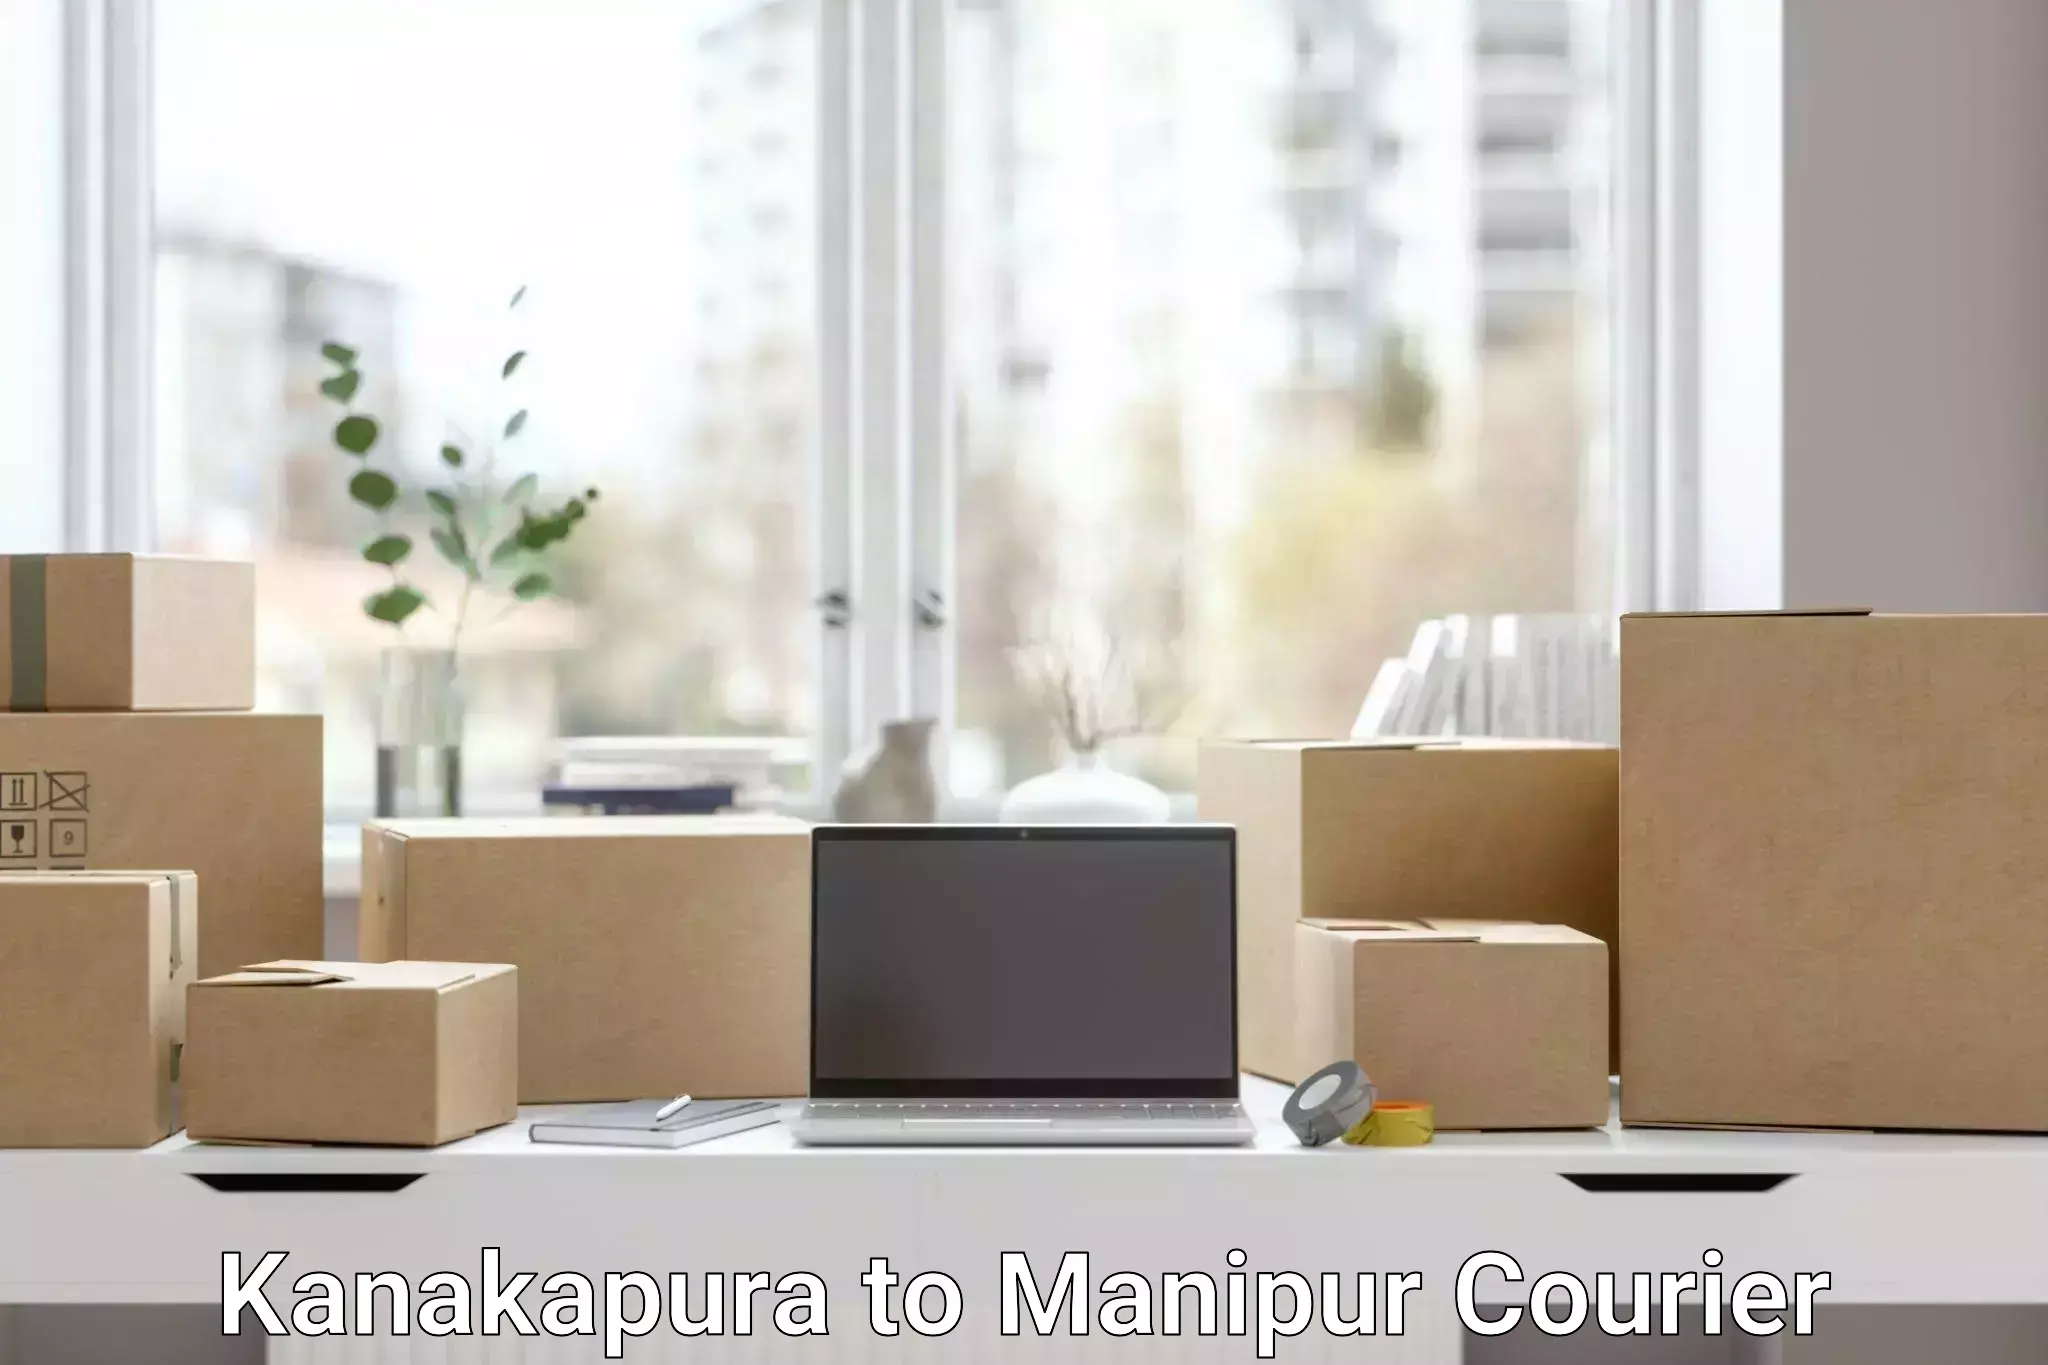 High-capacity parcel service Kanakapura to Moirang